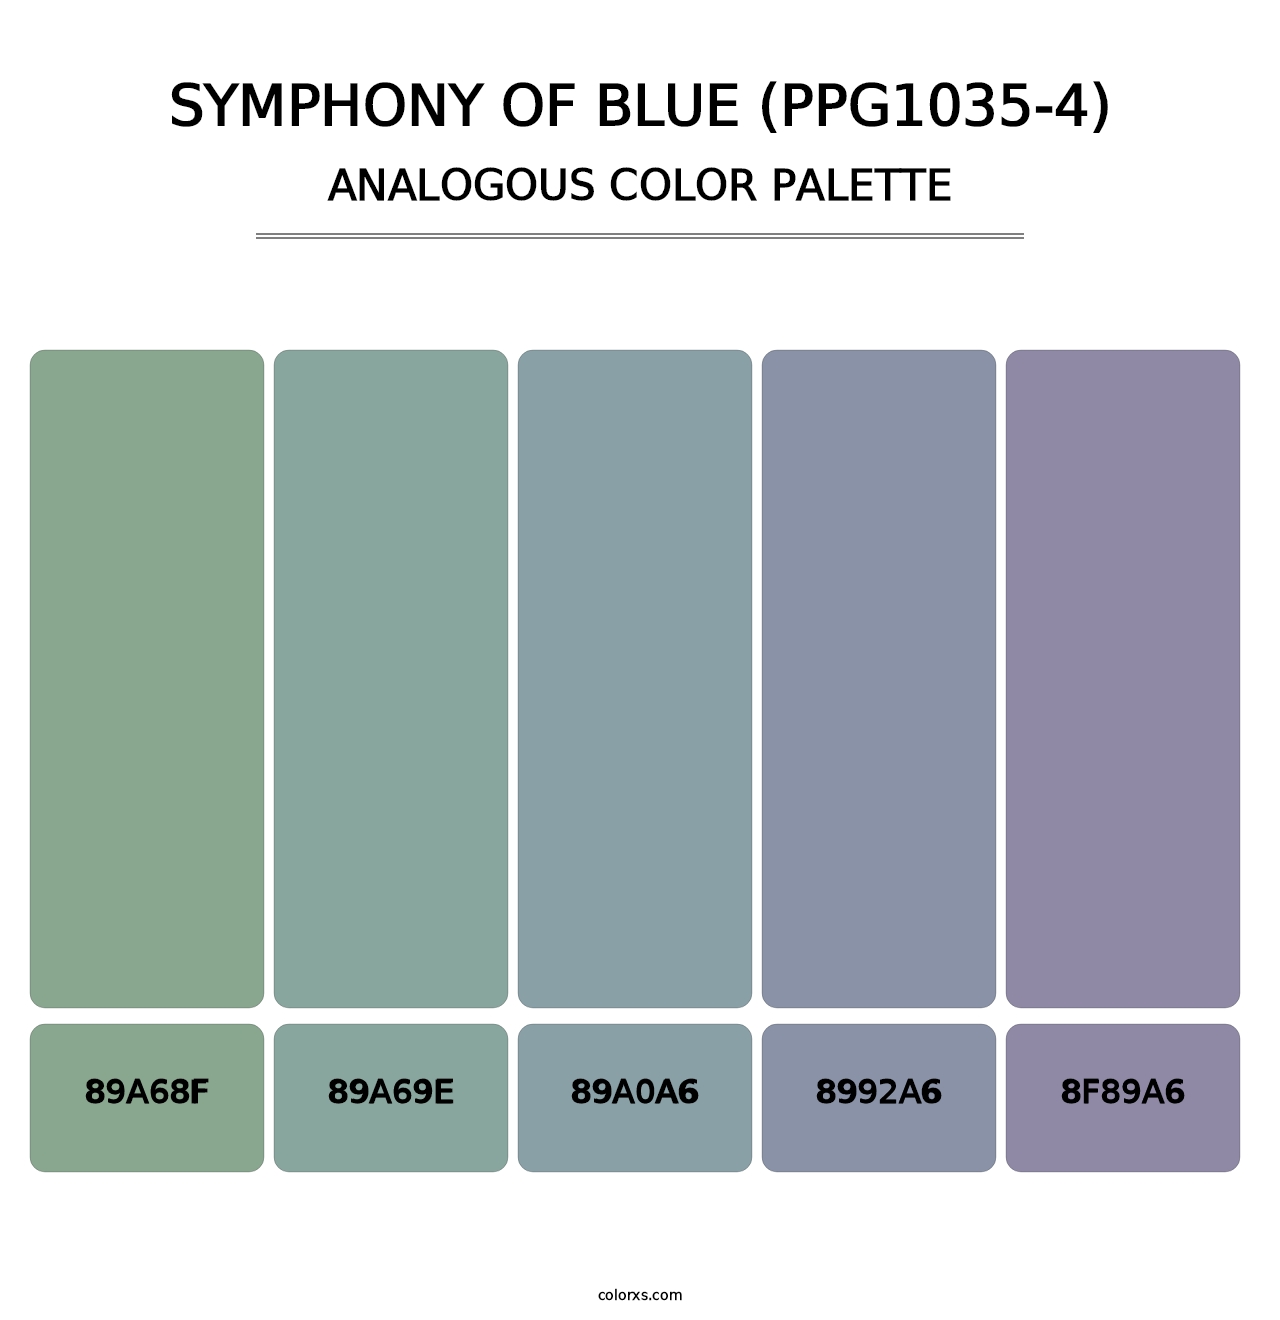 Symphony Of Blue (PPG1035-4) - Analogous Color Palette